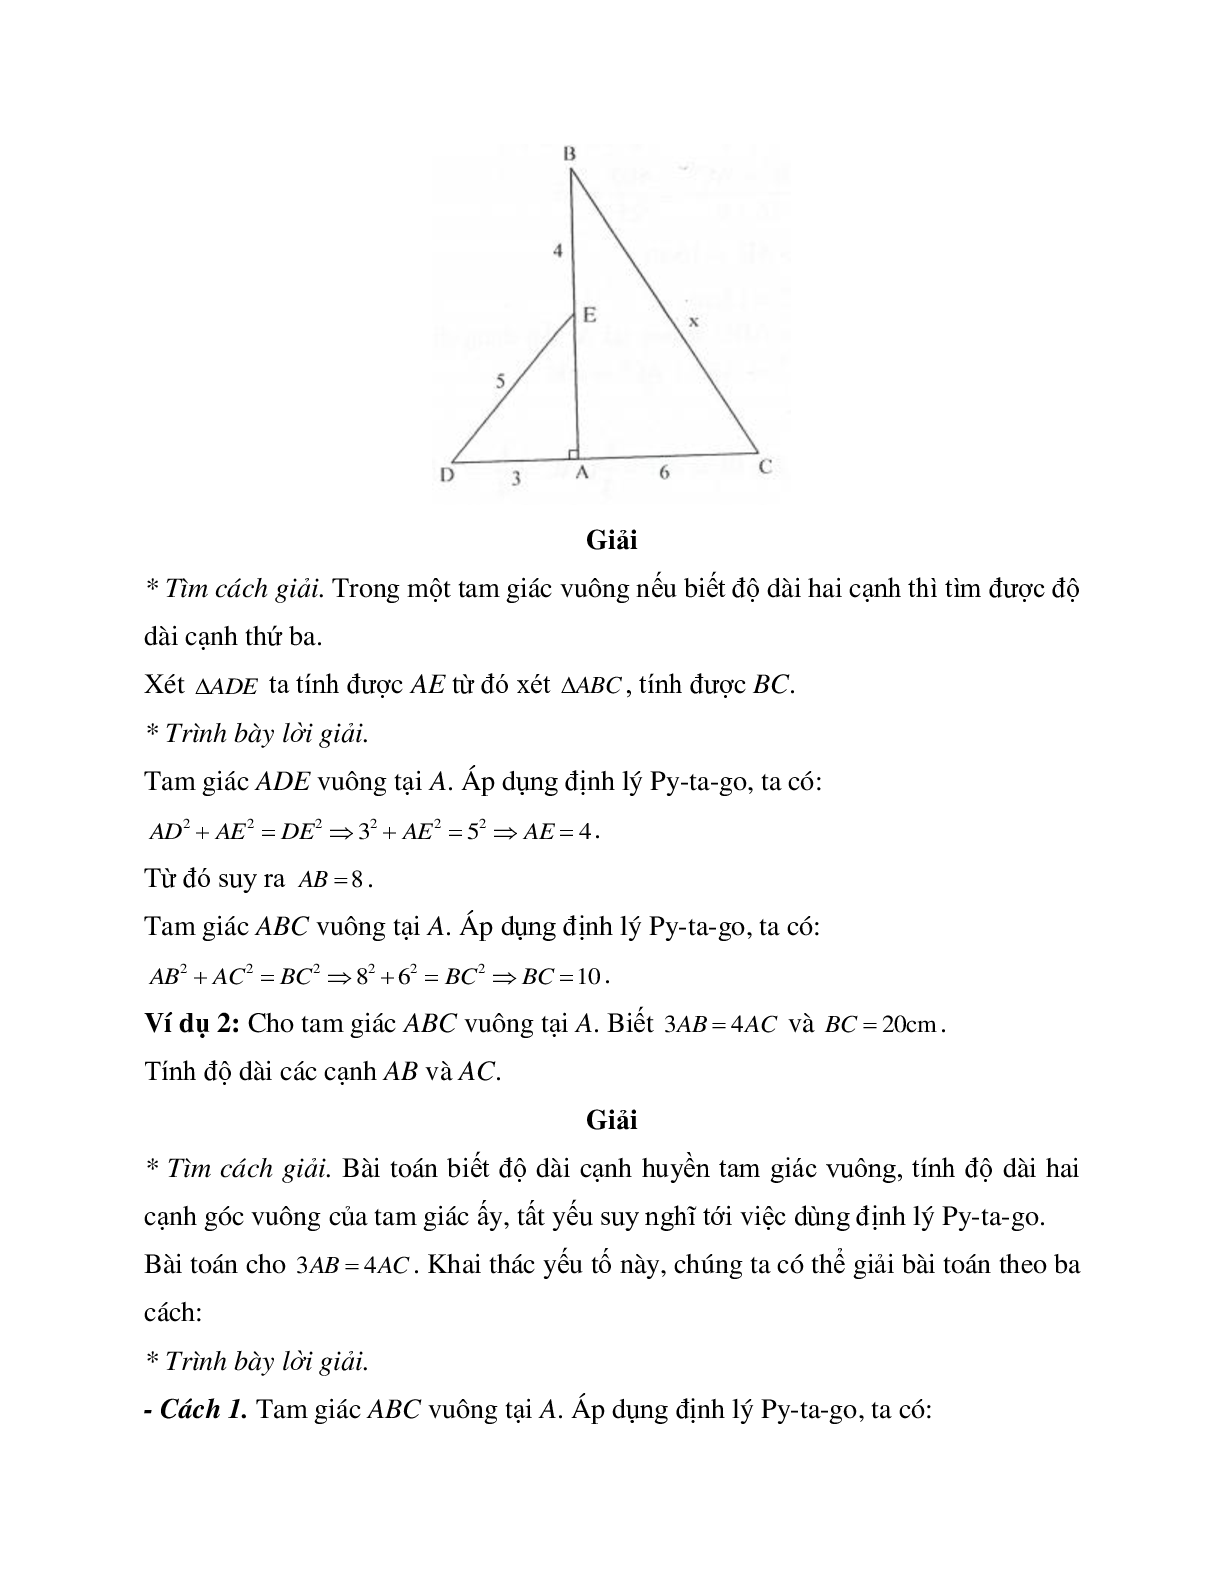 Những bài tập điển hình về Định lý Pi-ta-go trong tam giác vuông có lời giải (trang 2)